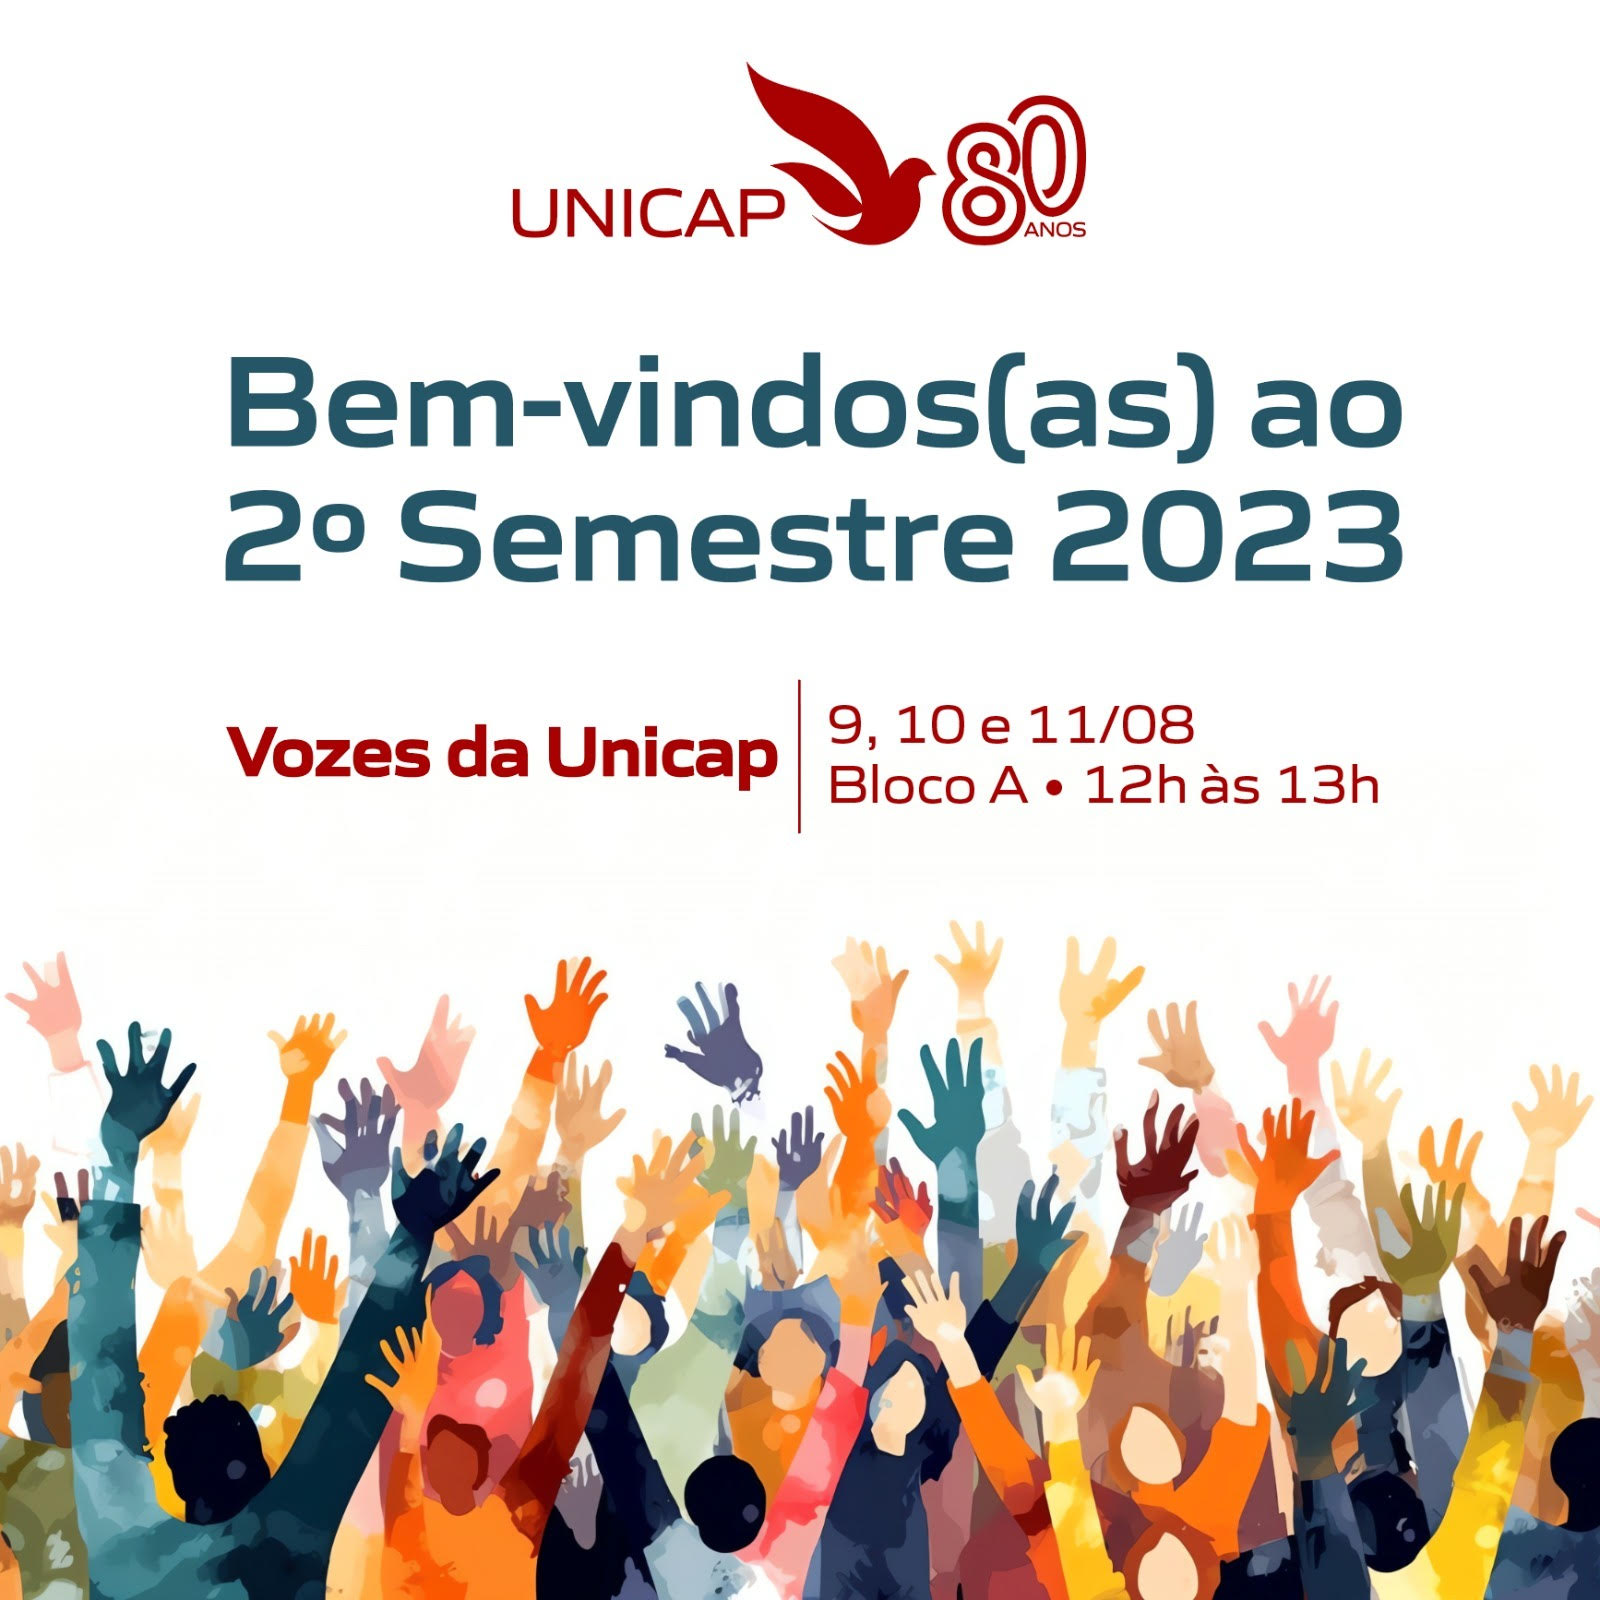 Vozes da Unicap - Unicap - Universidade Católica de Pernambuco